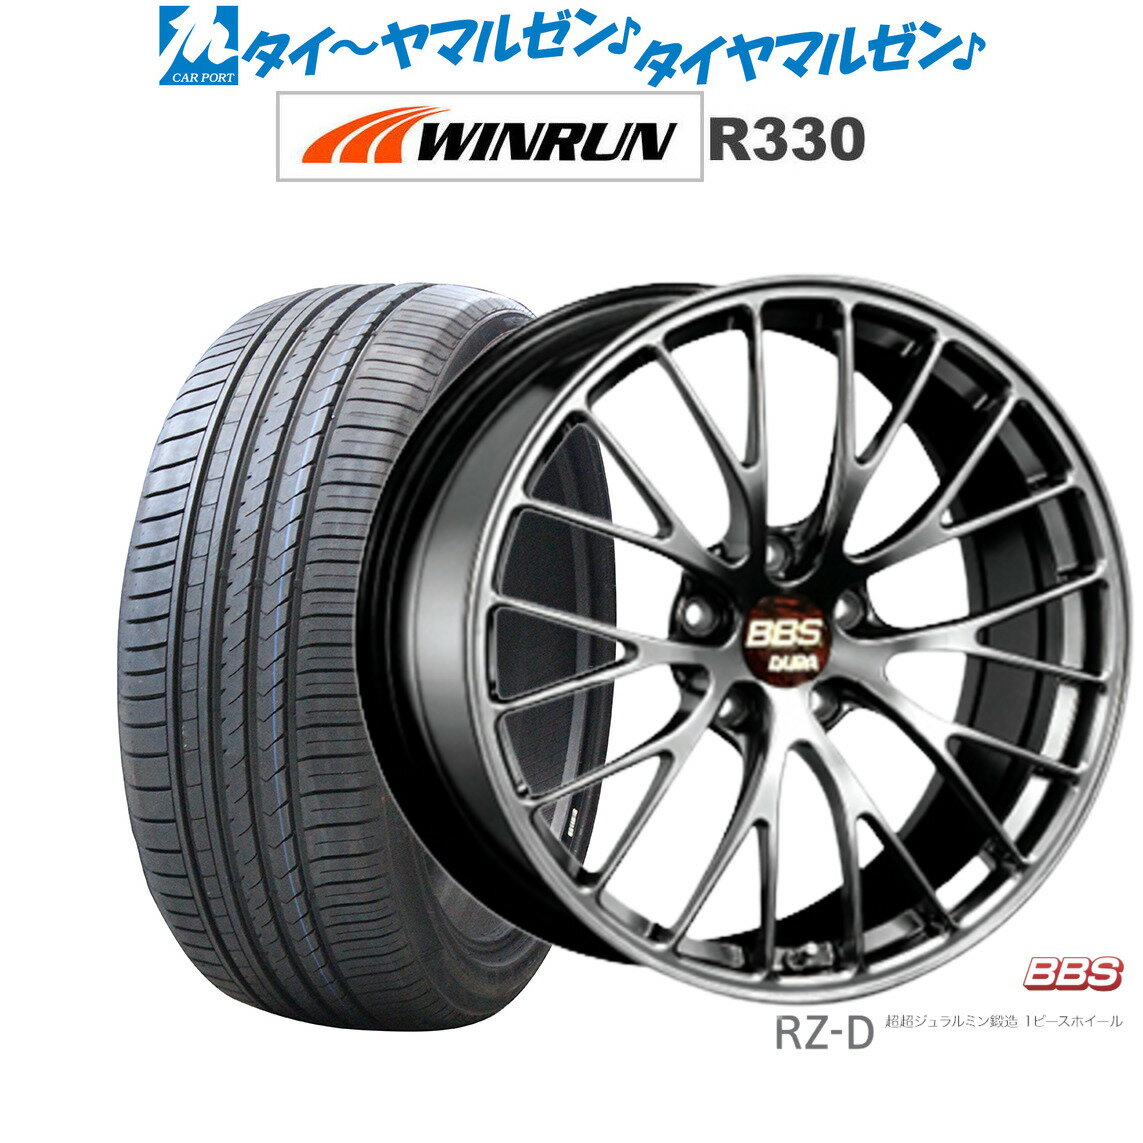 [5/18]ストアポイント3倍!!新品 サマータイヤ ホイール4本セットBBS JAPAN RZ-D20インチ 8.5JWINRUN ウインラン R330245/30R20